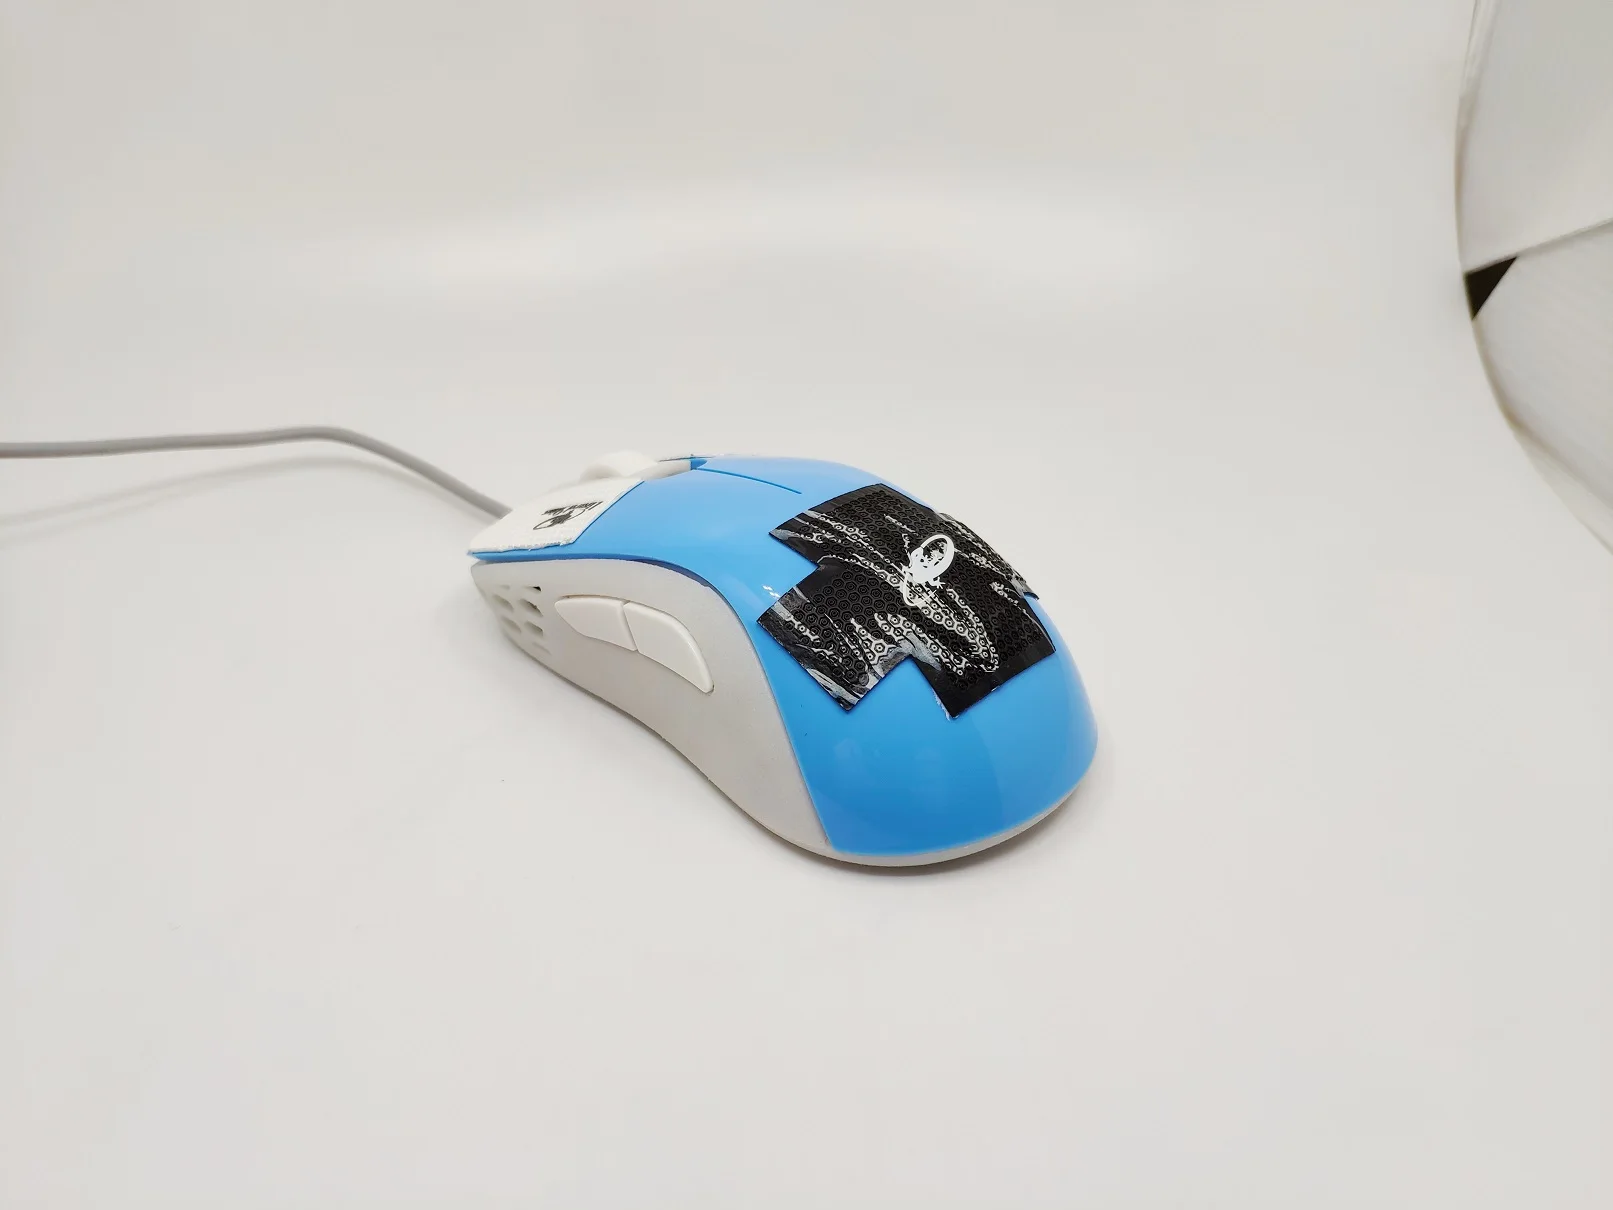 Zowie Divina S2 mouse MOD 2,0 стиль электронная спортивная игра DIY чехол Корпус SLA Материал ультра светильник фантомный светильник ремонт выдалбливают